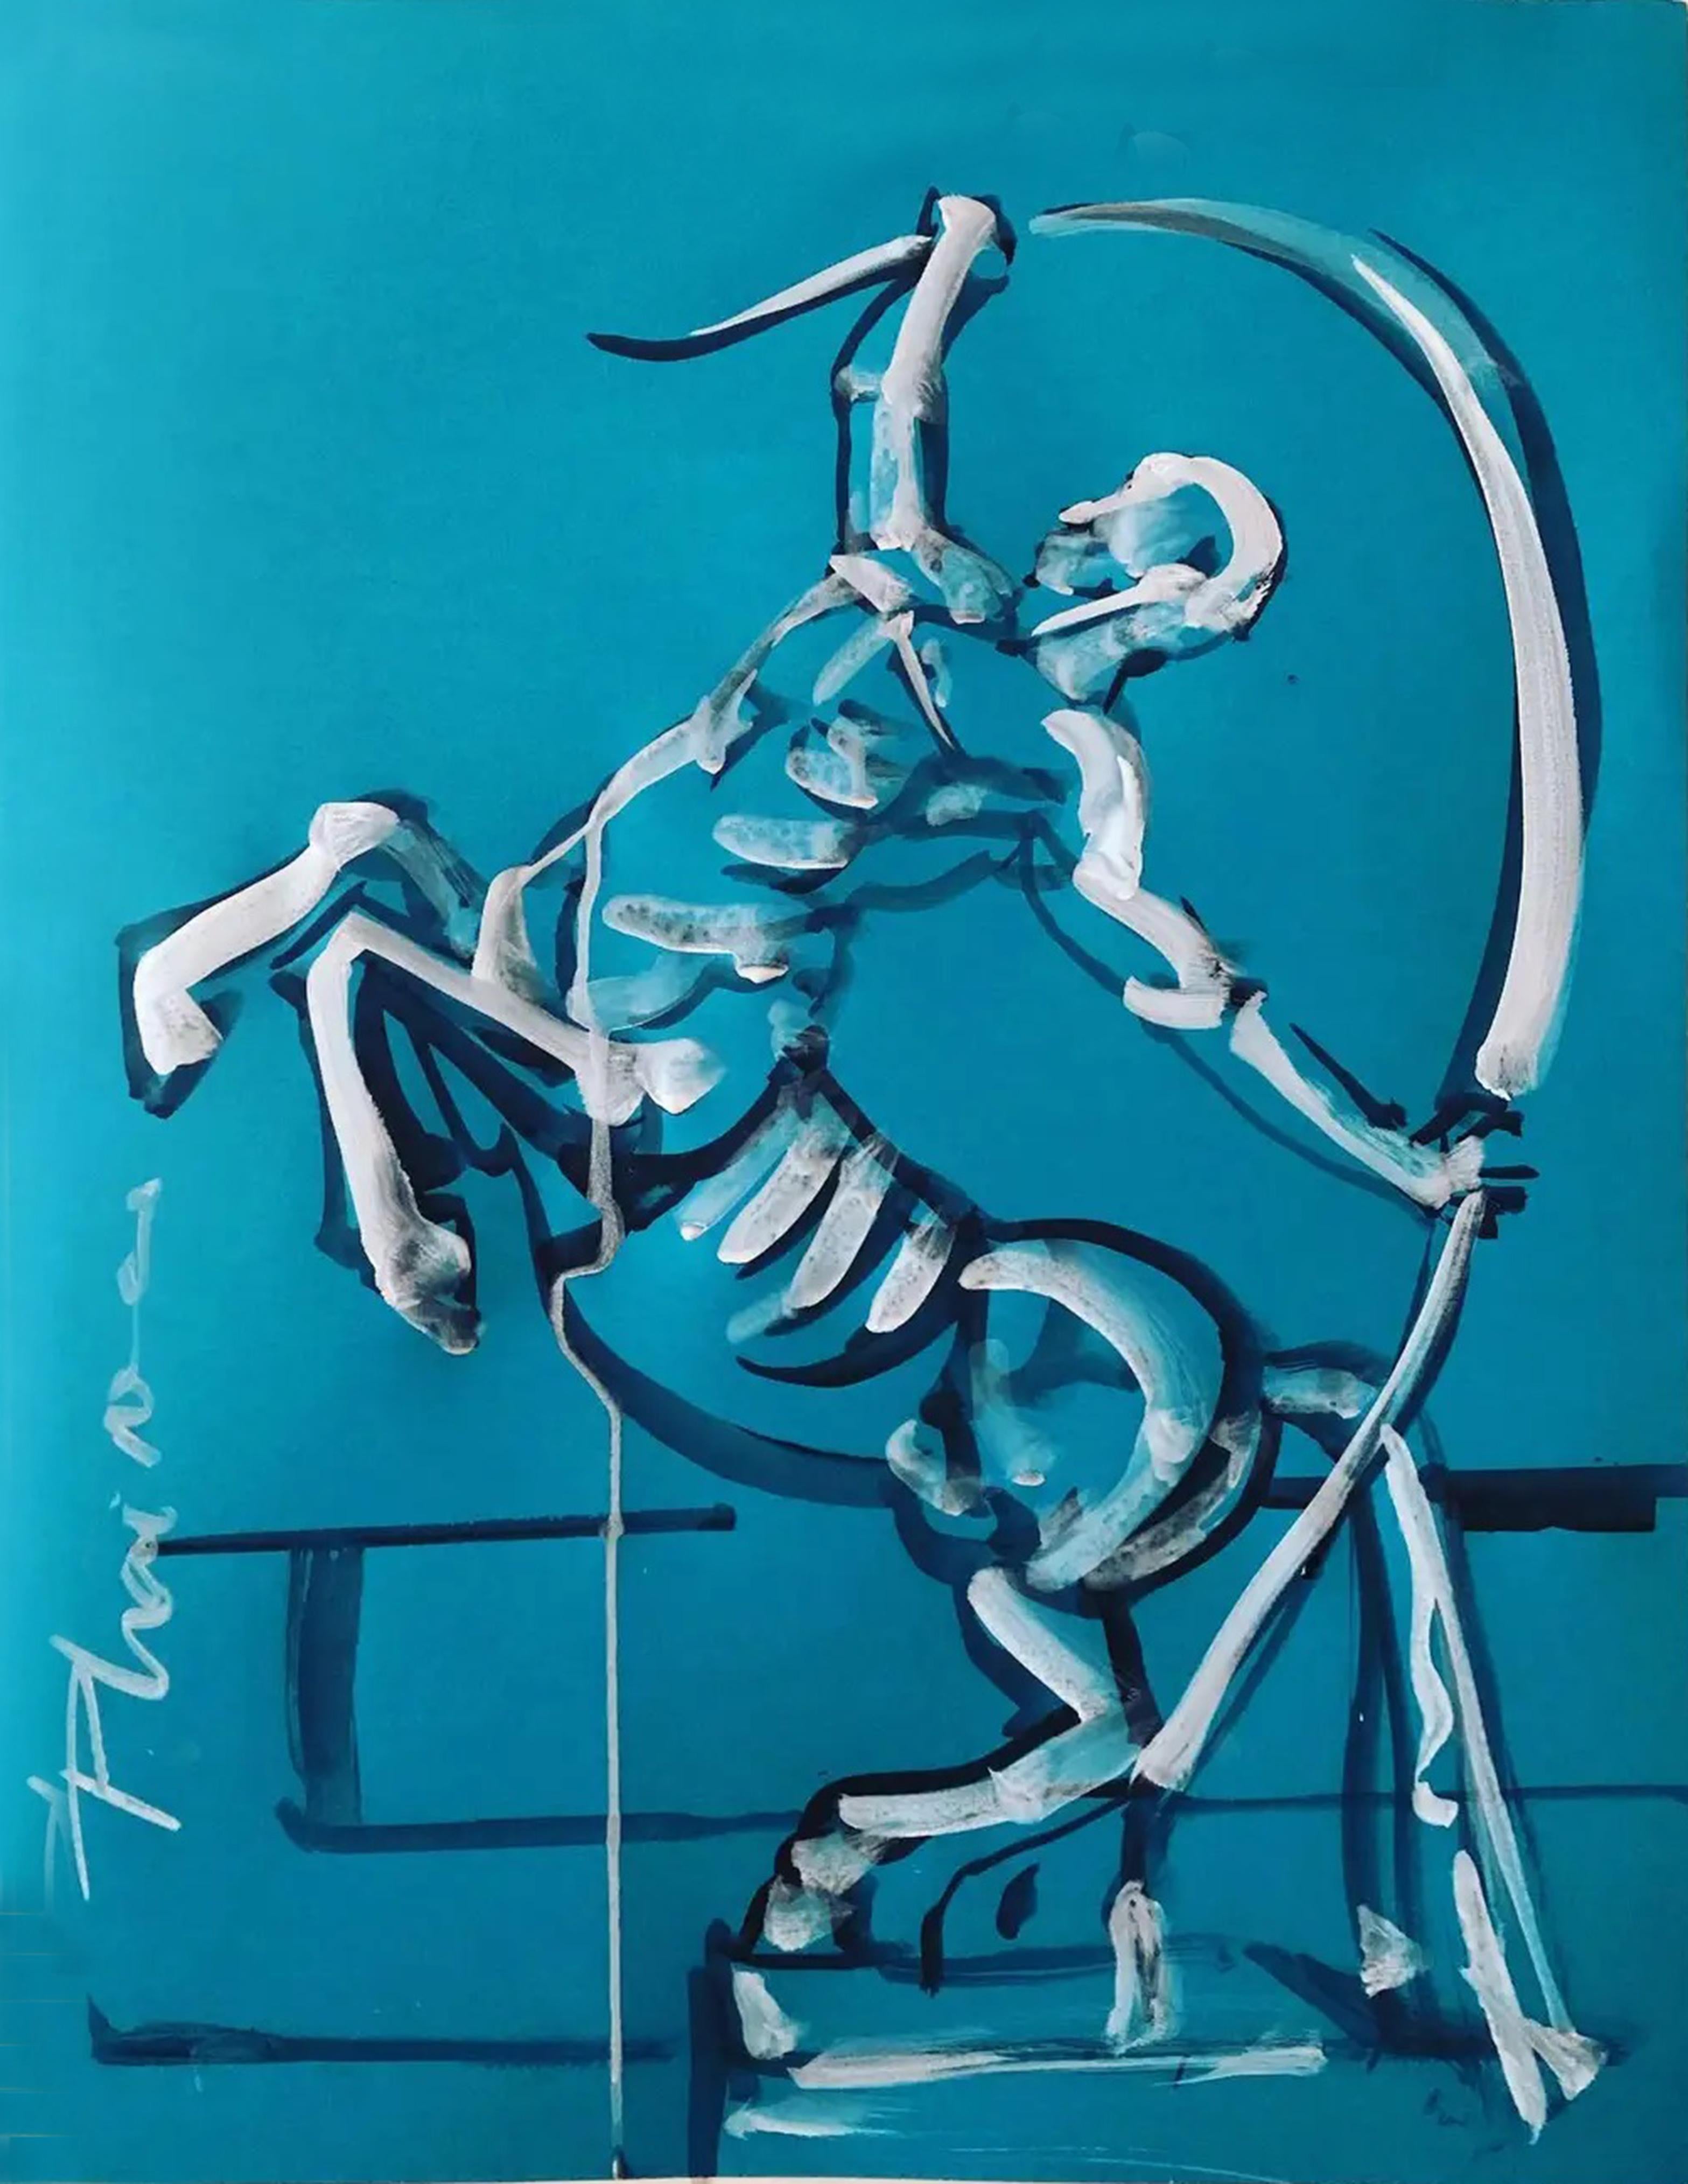 Zentaur
Teil der Serie Neo-Mythologie.

Größe: 27,5x70x19,5cm 
Zentaur ist eine mythologische Figur mit dem Oberkörper eines Menschen und dem Unterkörper und den Beinen eines Pferdes. In meinem Kunstwerk wird er kämpfend dargestellt.
Wie die